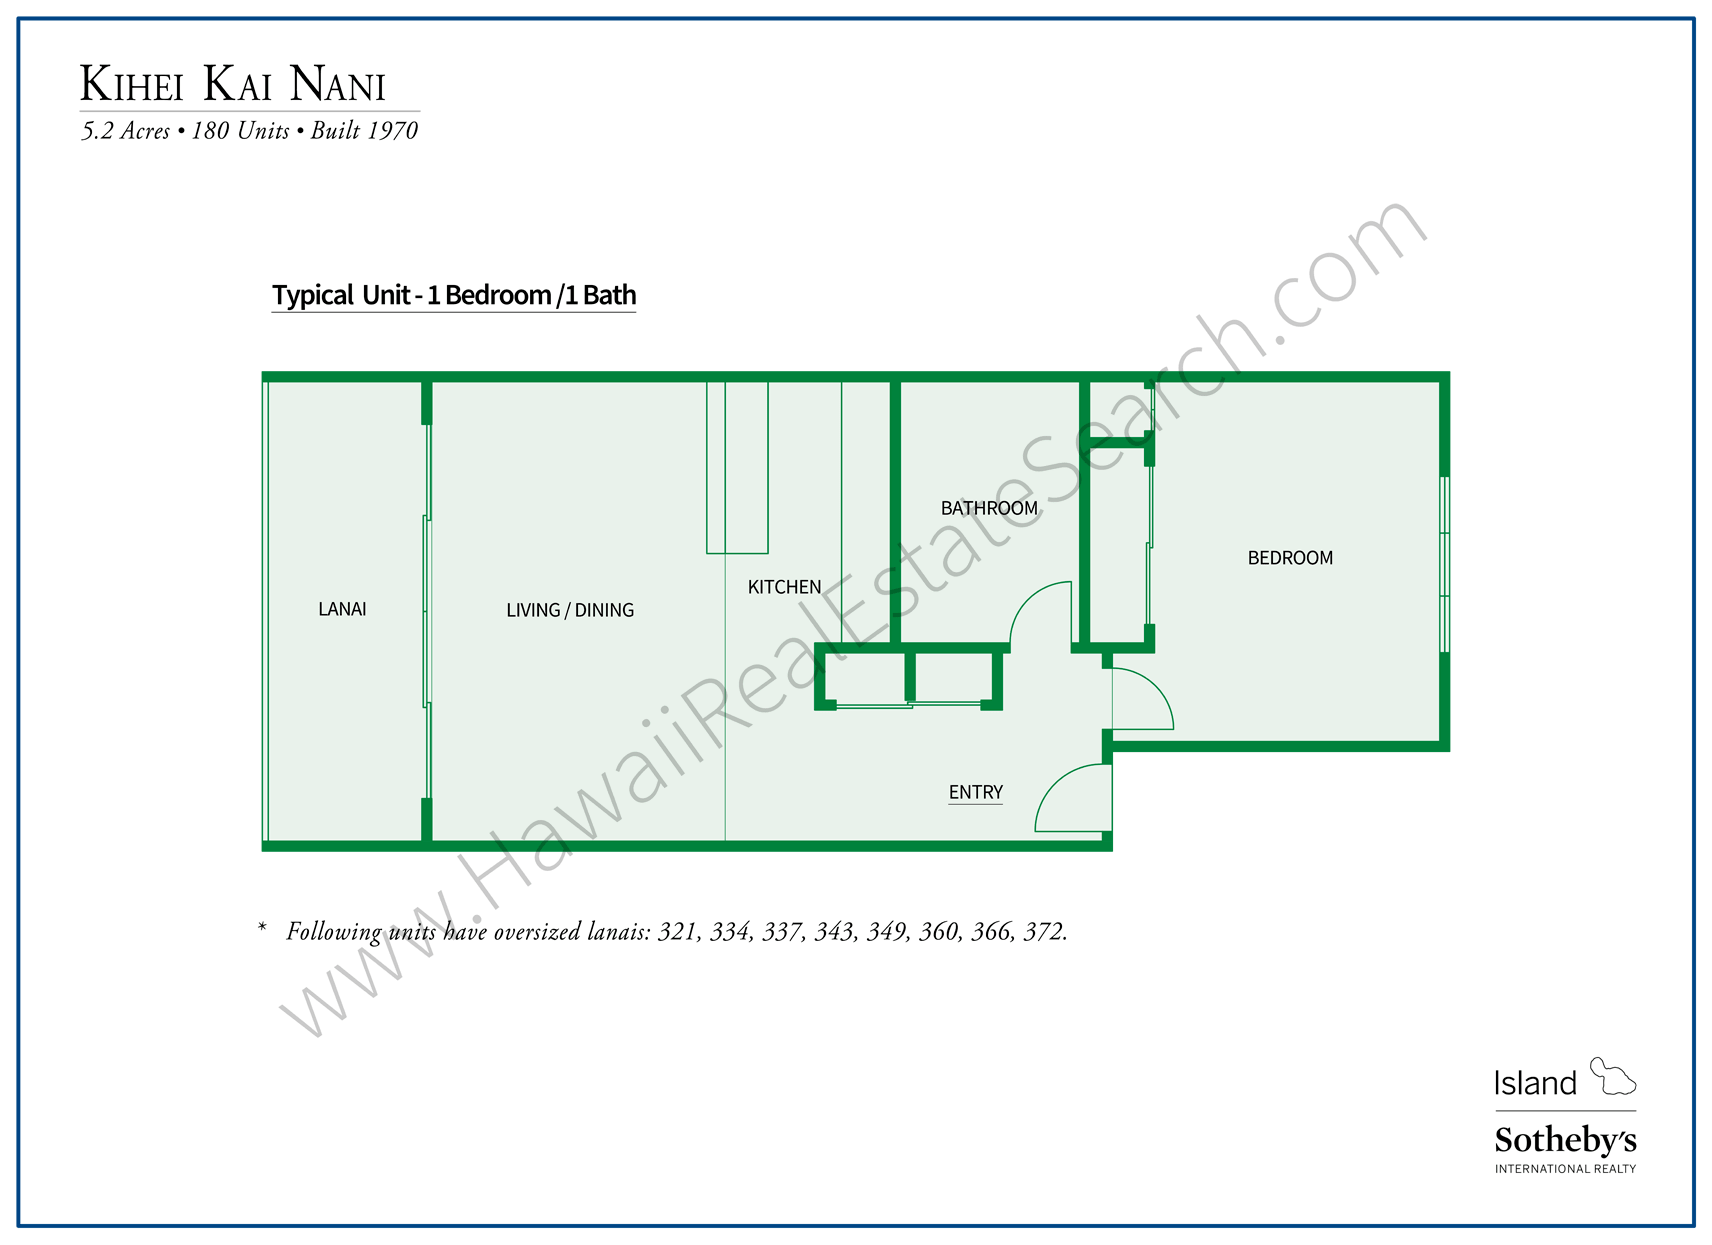 Kihei Kai Nani Floor Plan